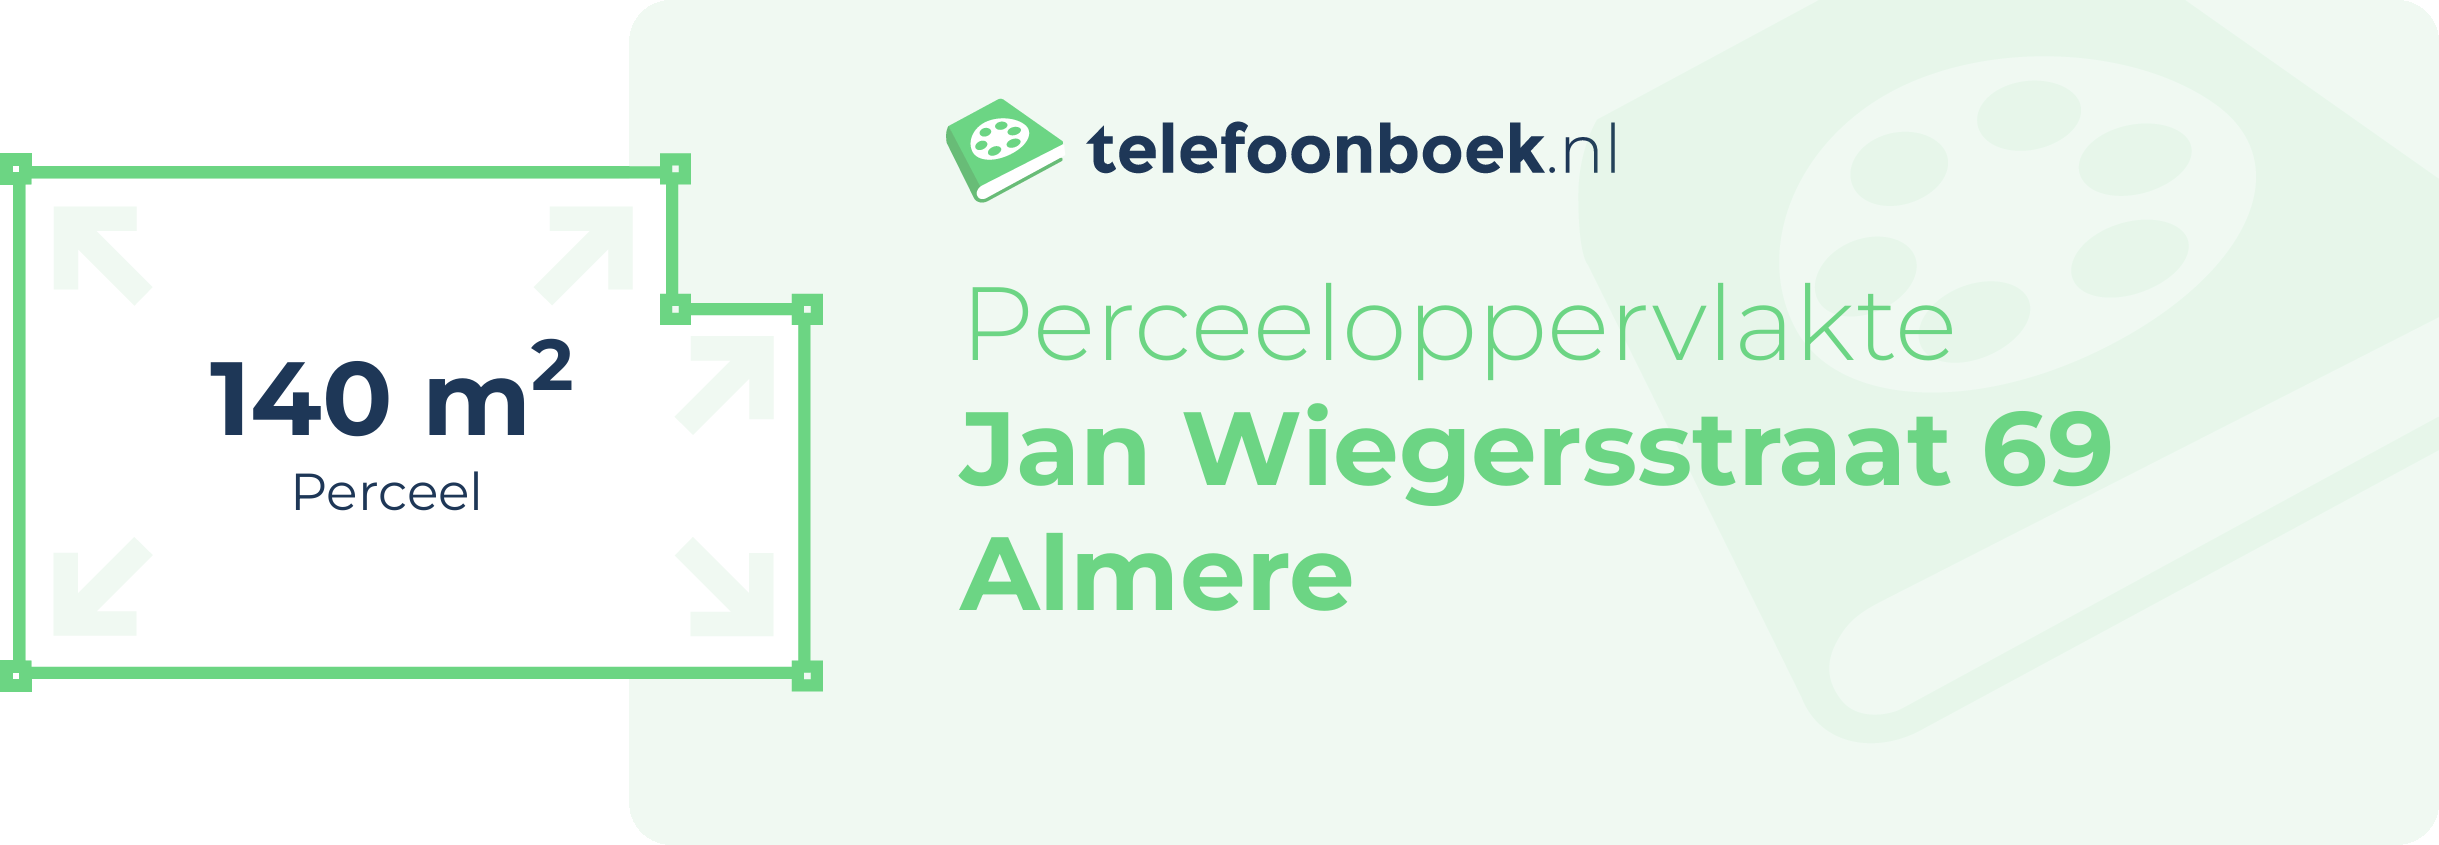 Perceeloppervlakte Jan Wiegersstraat 69 Almere